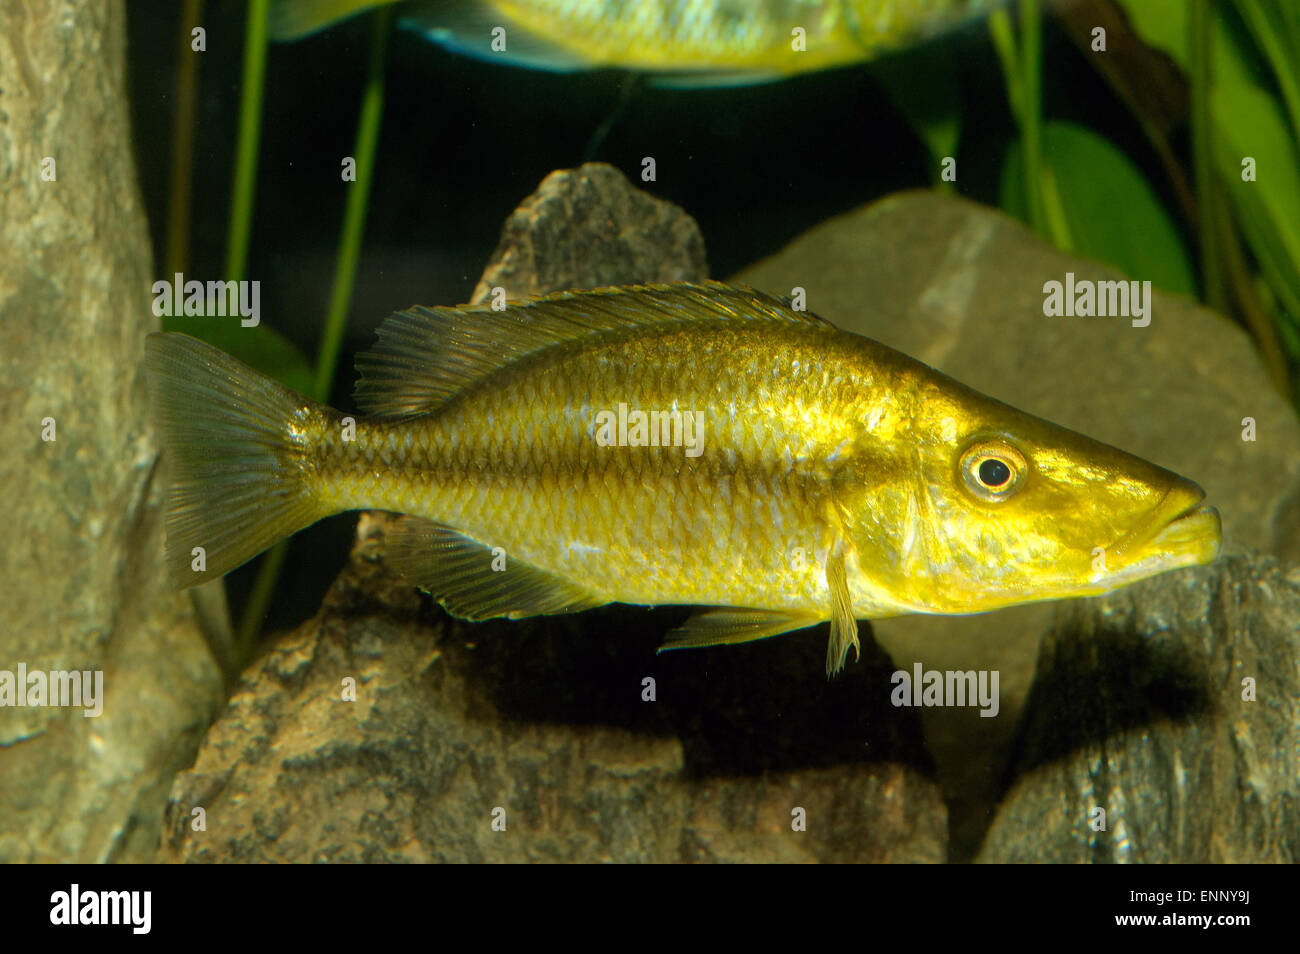 Female aquarium fish Dimidiochromis compressiceps. Stock Photo